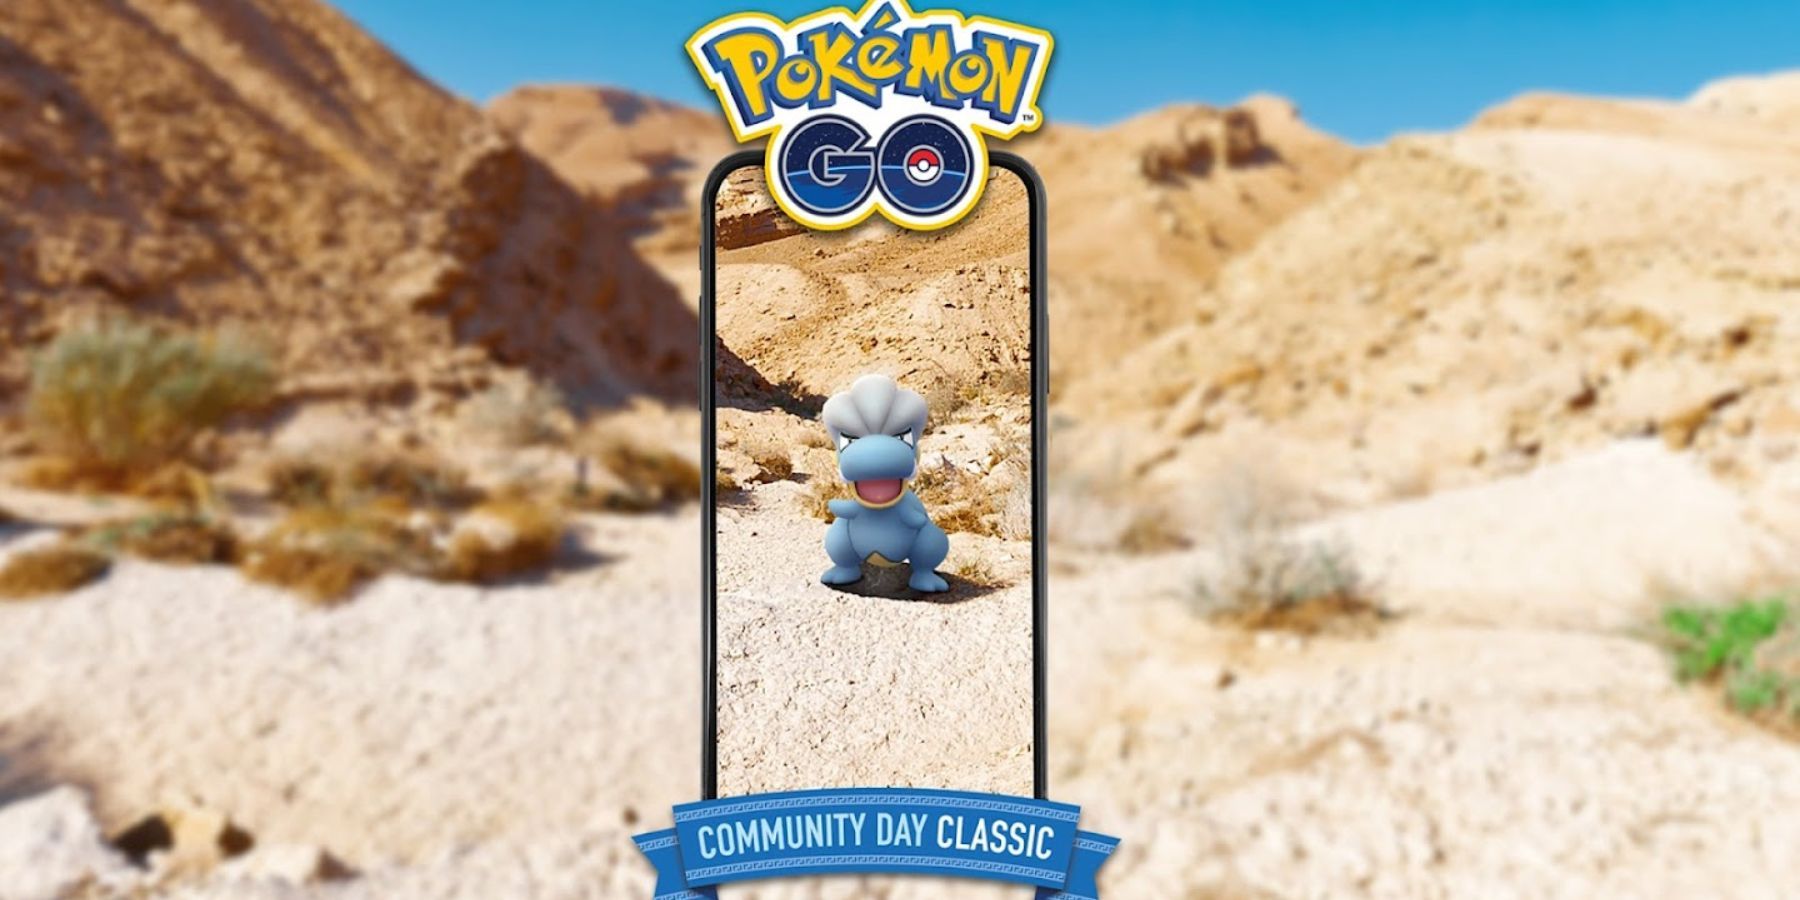 Dia da Comunidade Bagon em Pokémon GO